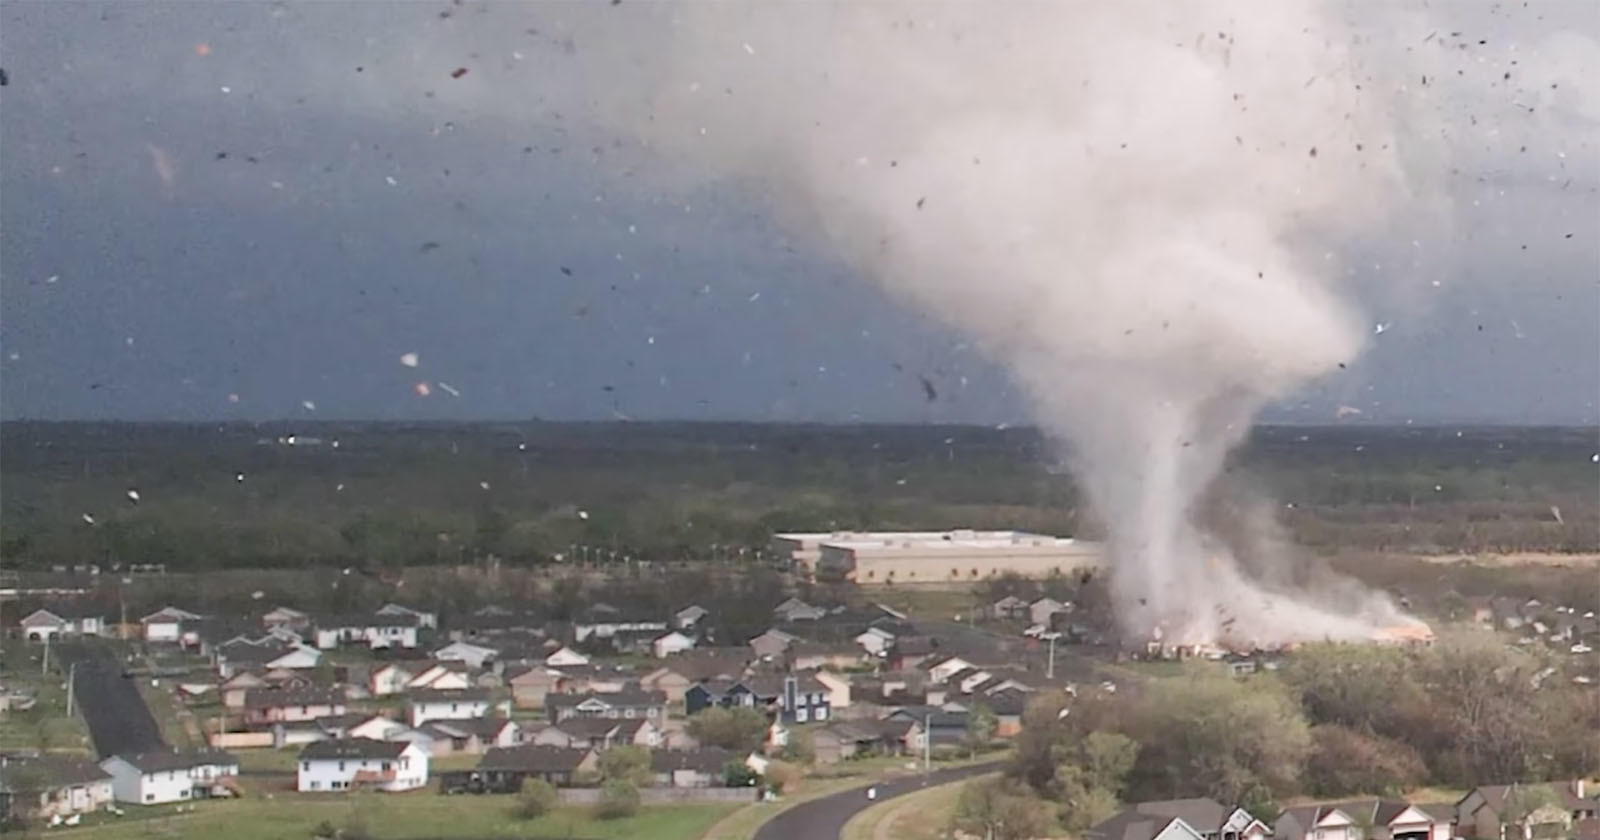  drone camera captures devastating tornado from air 